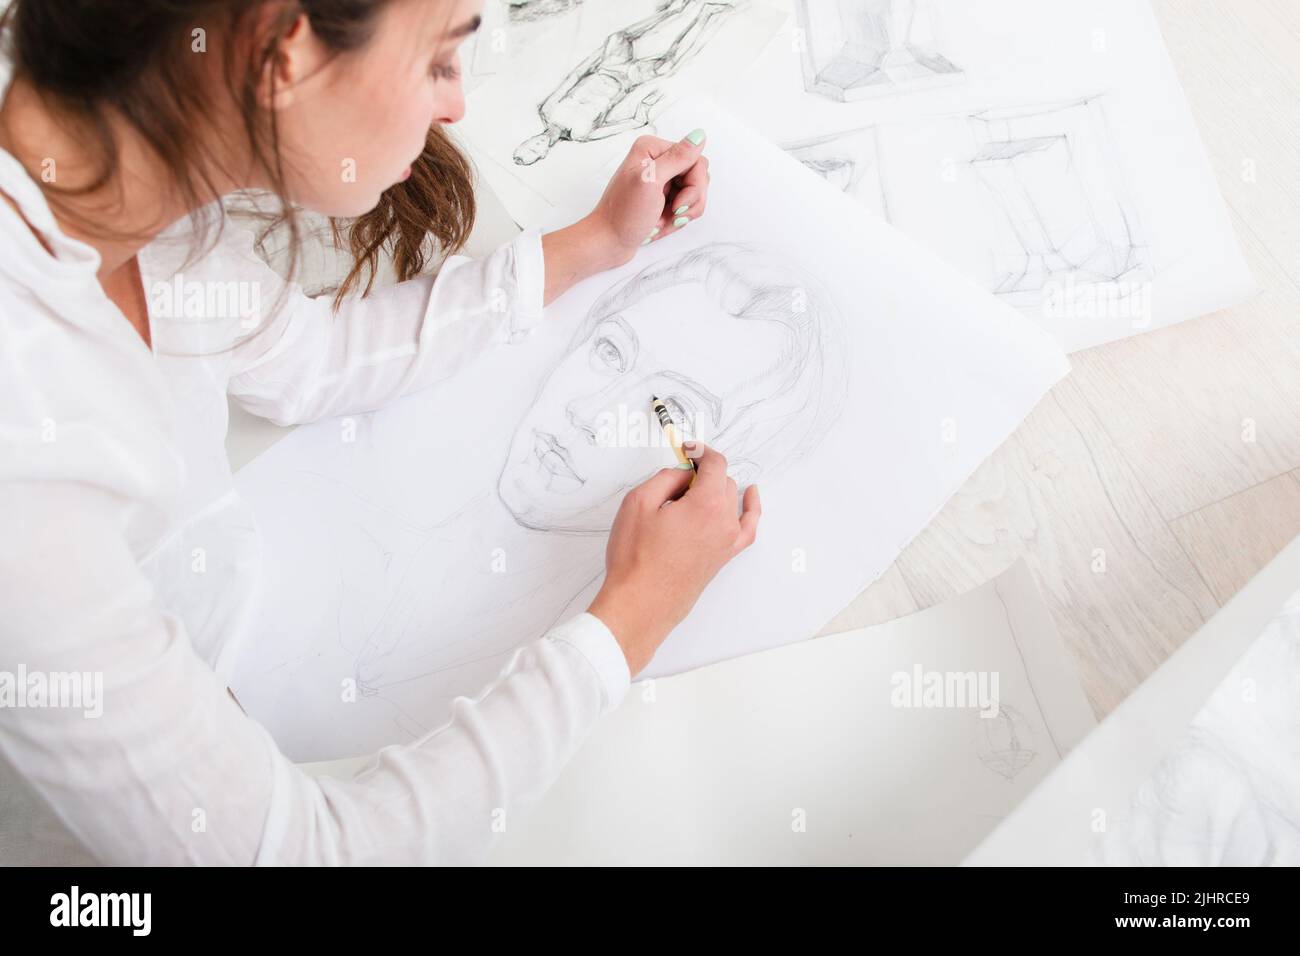 Artiste finissant le portrait d'un crayon humain sur le sol Banque D'Images